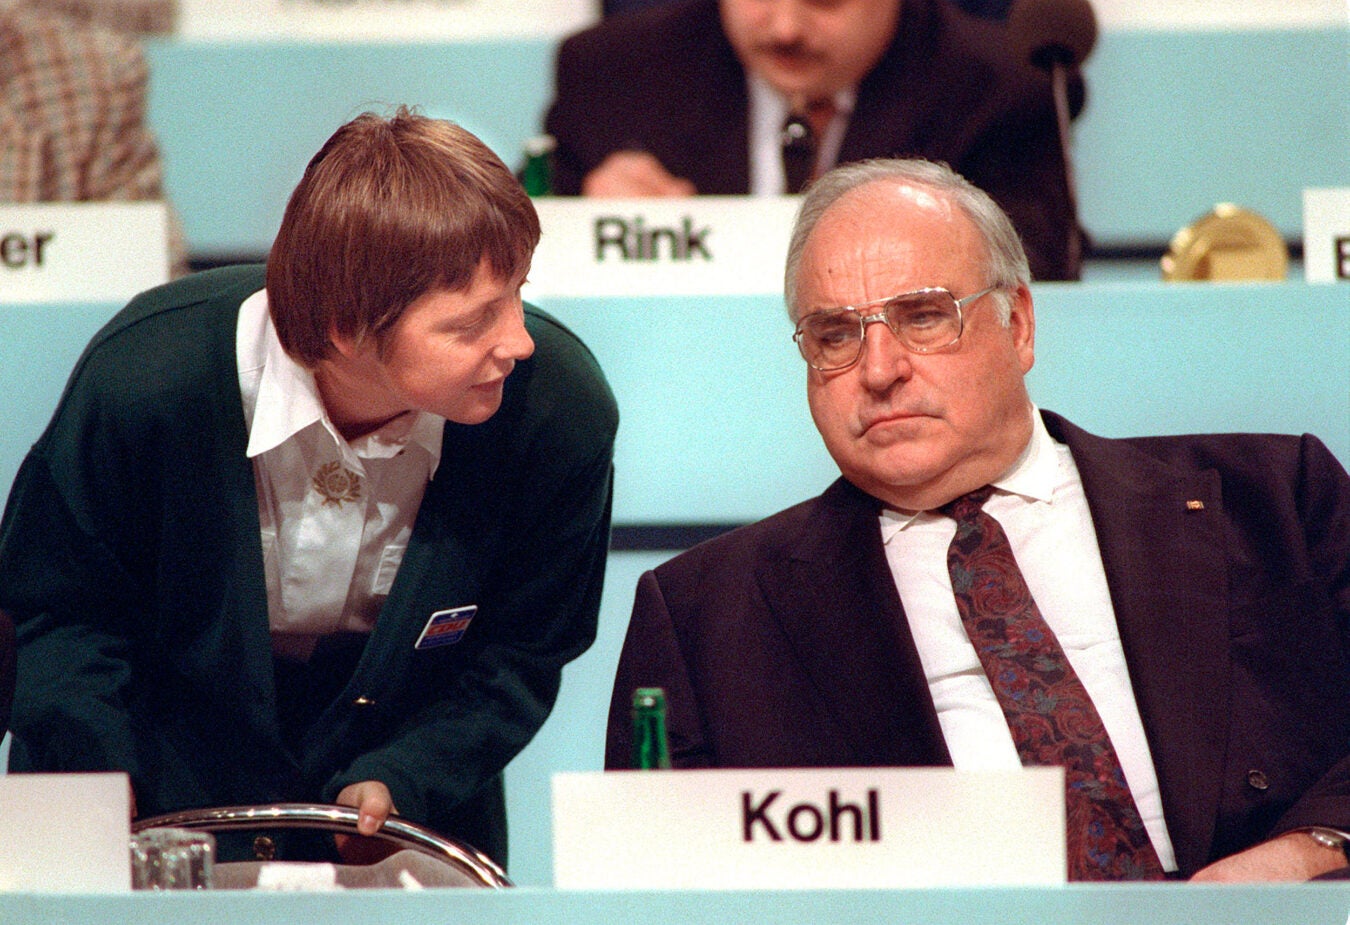 Angela Merkel talks to her mentor, Chancellor Helmut Kohl, in 1991.